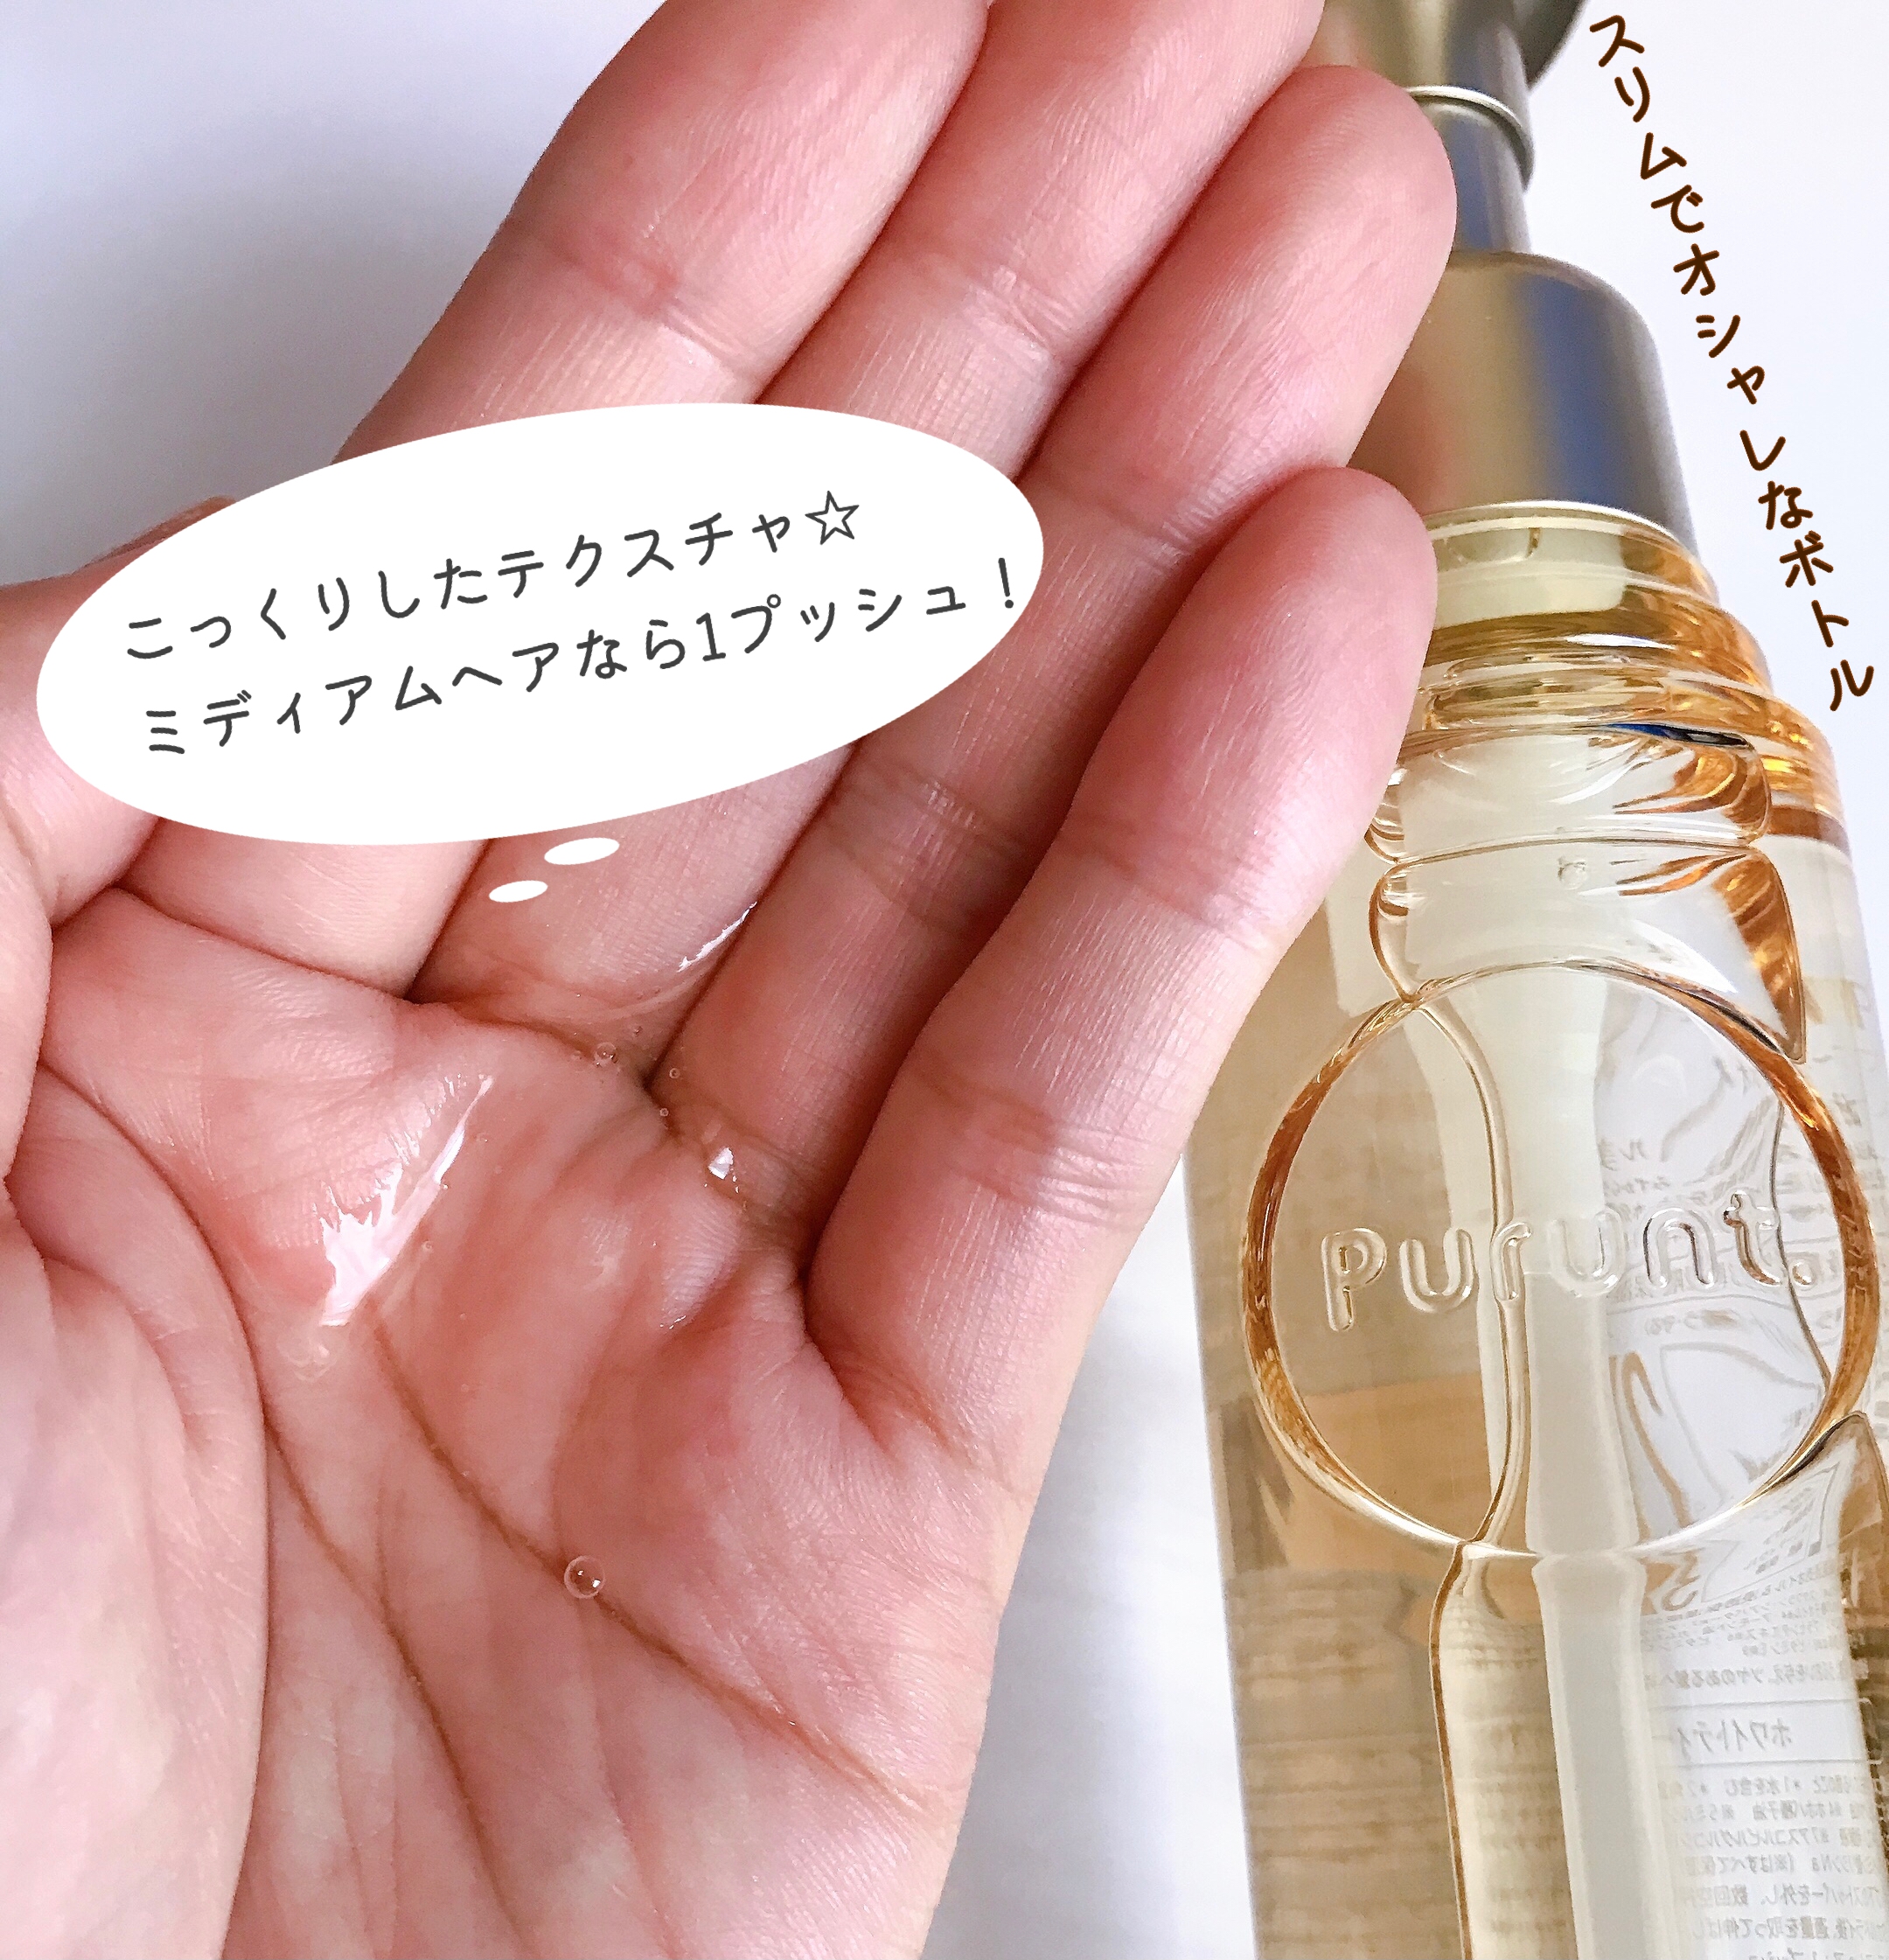 Purunt.(プルント) ディープ モイスト美容液 ヘアオイルを使ったMarukoさんのクチコミ画像2